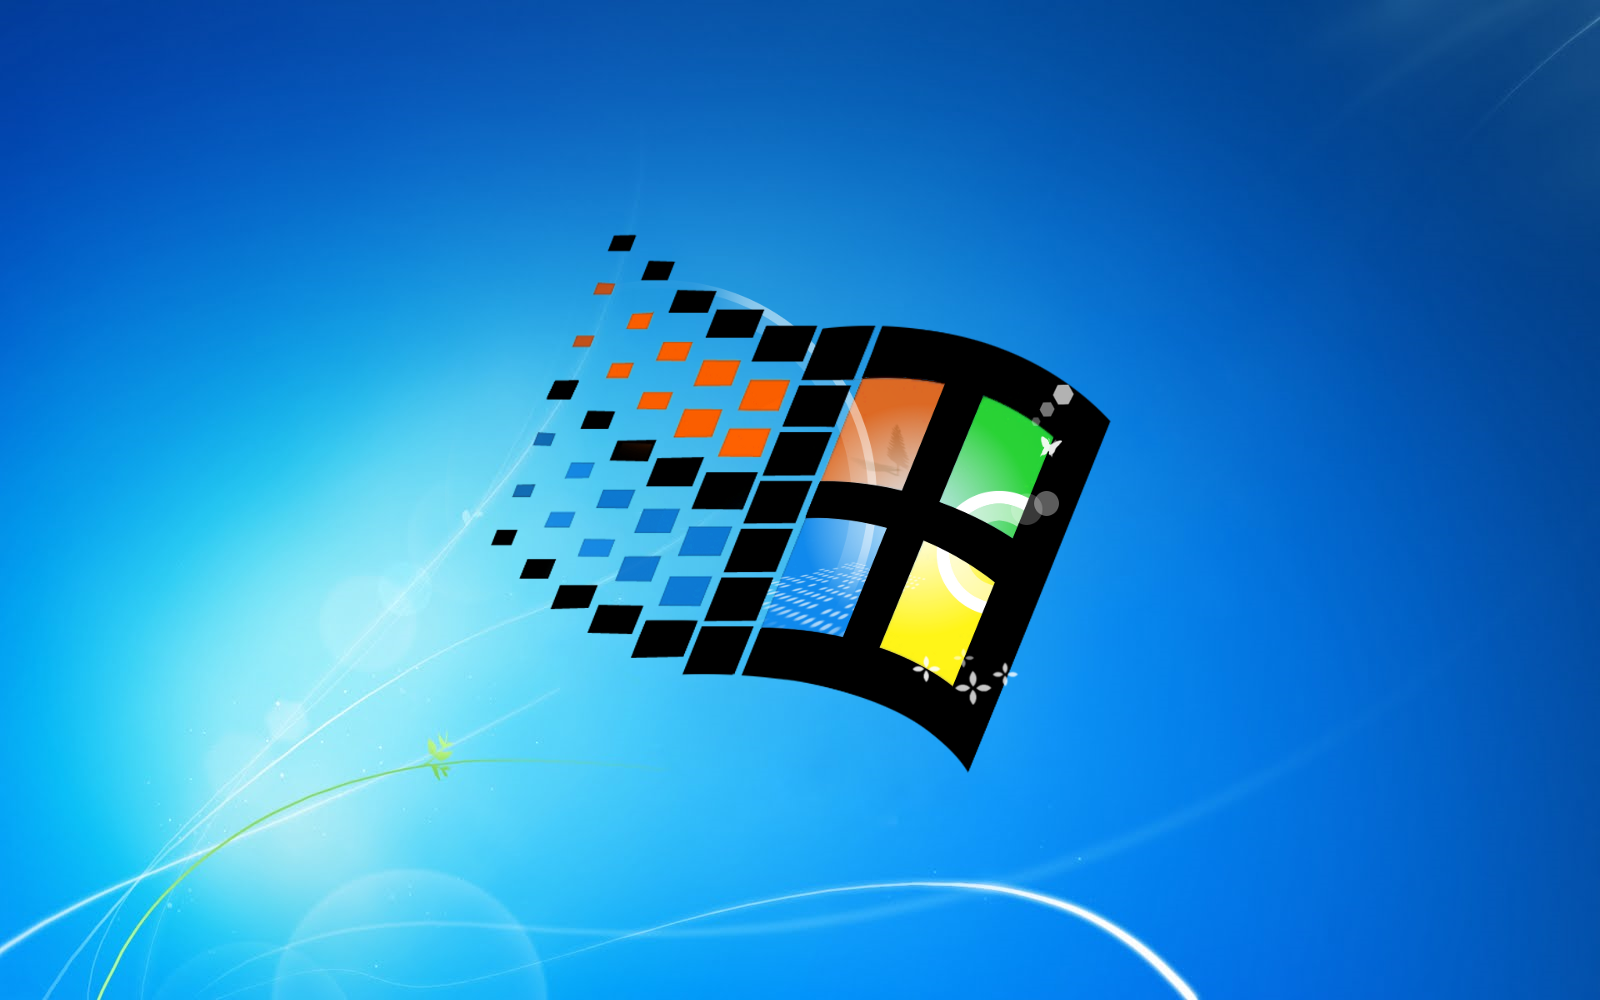 Windows 7 95 flag by Spritanium